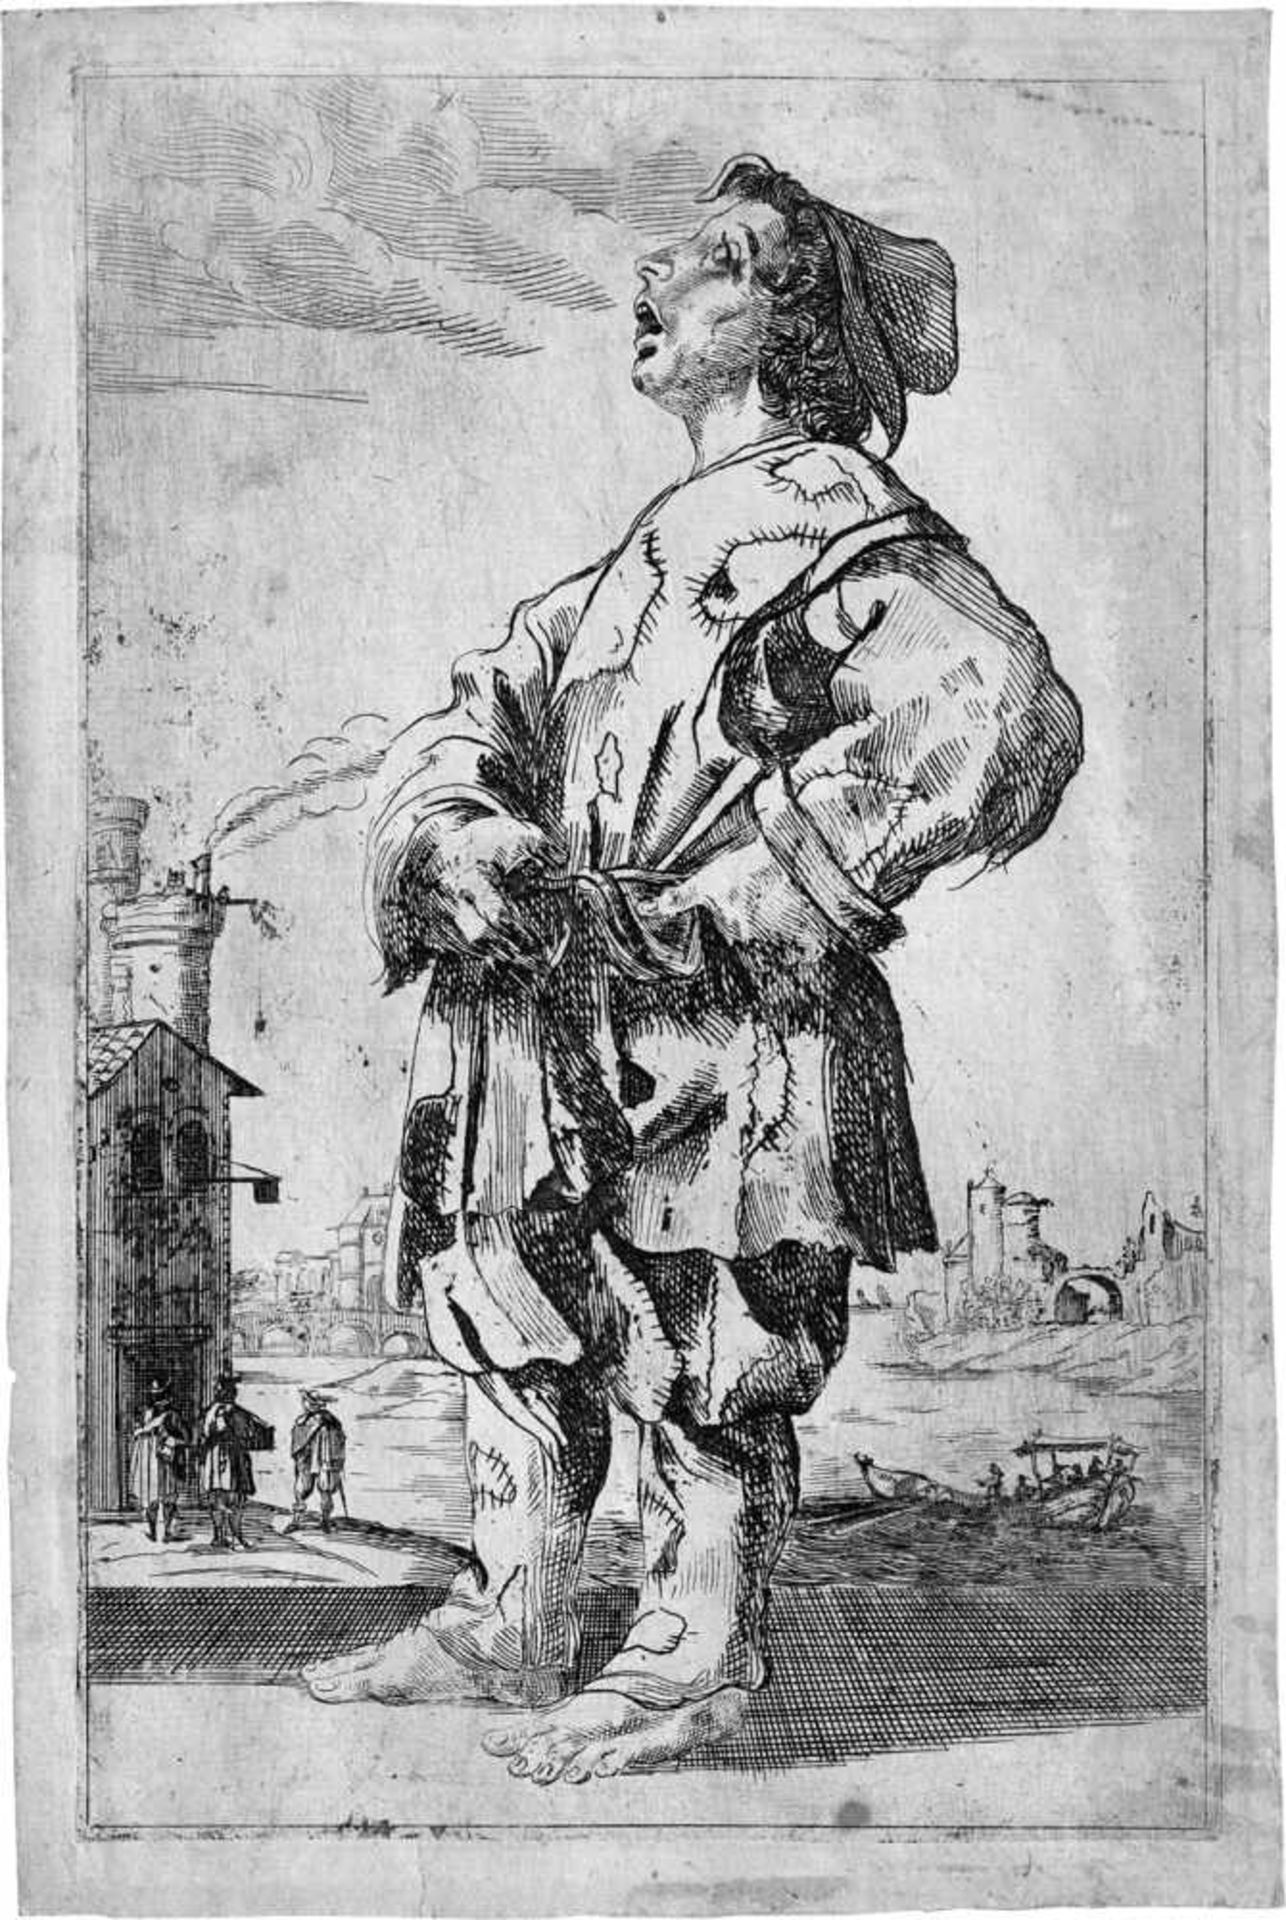 Ruprecht, Prinz von der Pfalz: Der Bettlerjunge Der Bettlerjunge. Radierung. 26,1 x 16,6 cm.